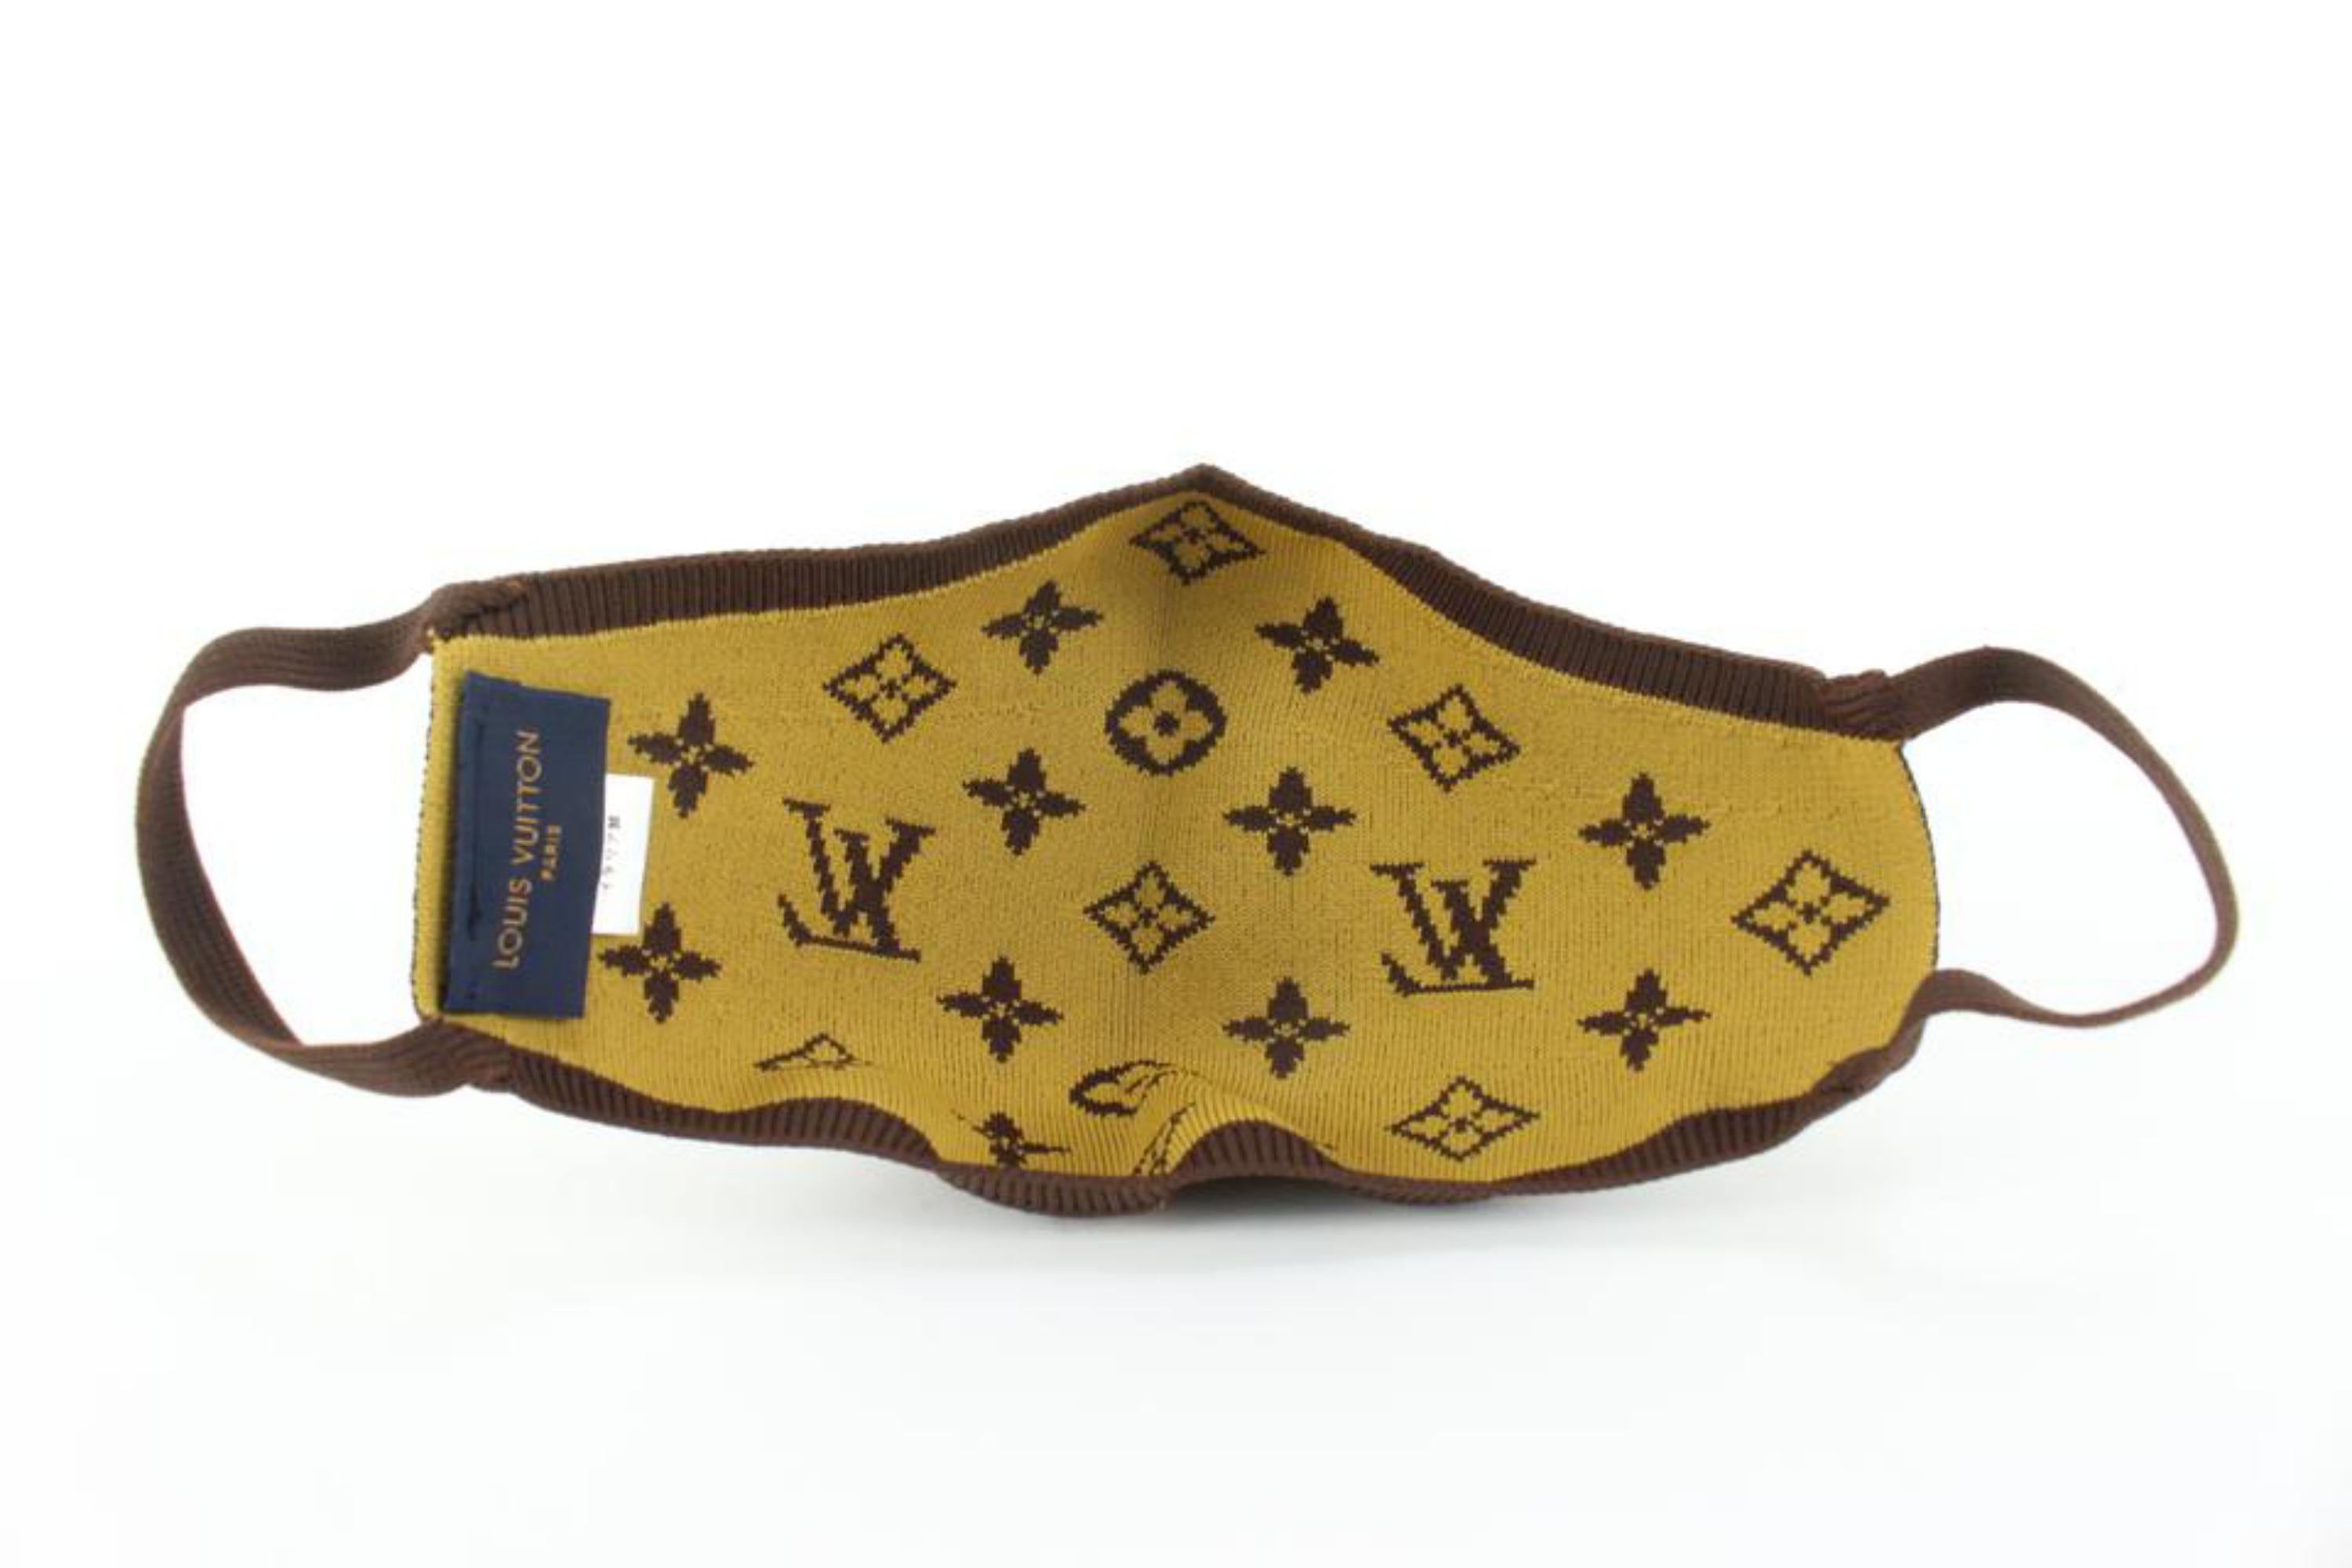 Louis Vuitton Monogram Knit Face Mask 94lz526s 3